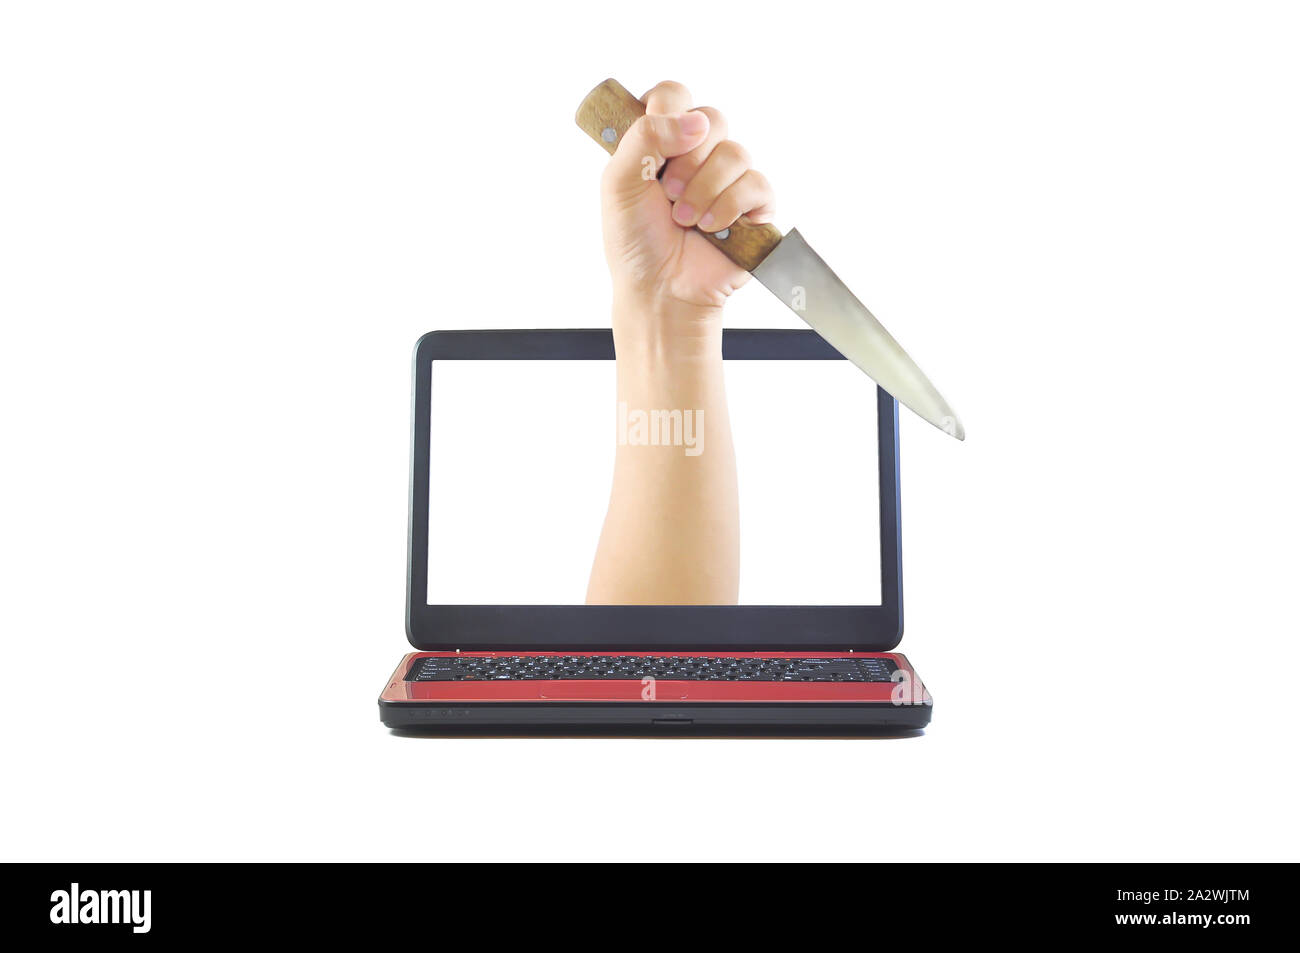 Une main tenant un couteau qui sortent d'un écran d'ordinateur portable. Fond isolé blanc. Représentation visuelle de la cyber-intimidation et cyber-criminalité. Banque D'Images